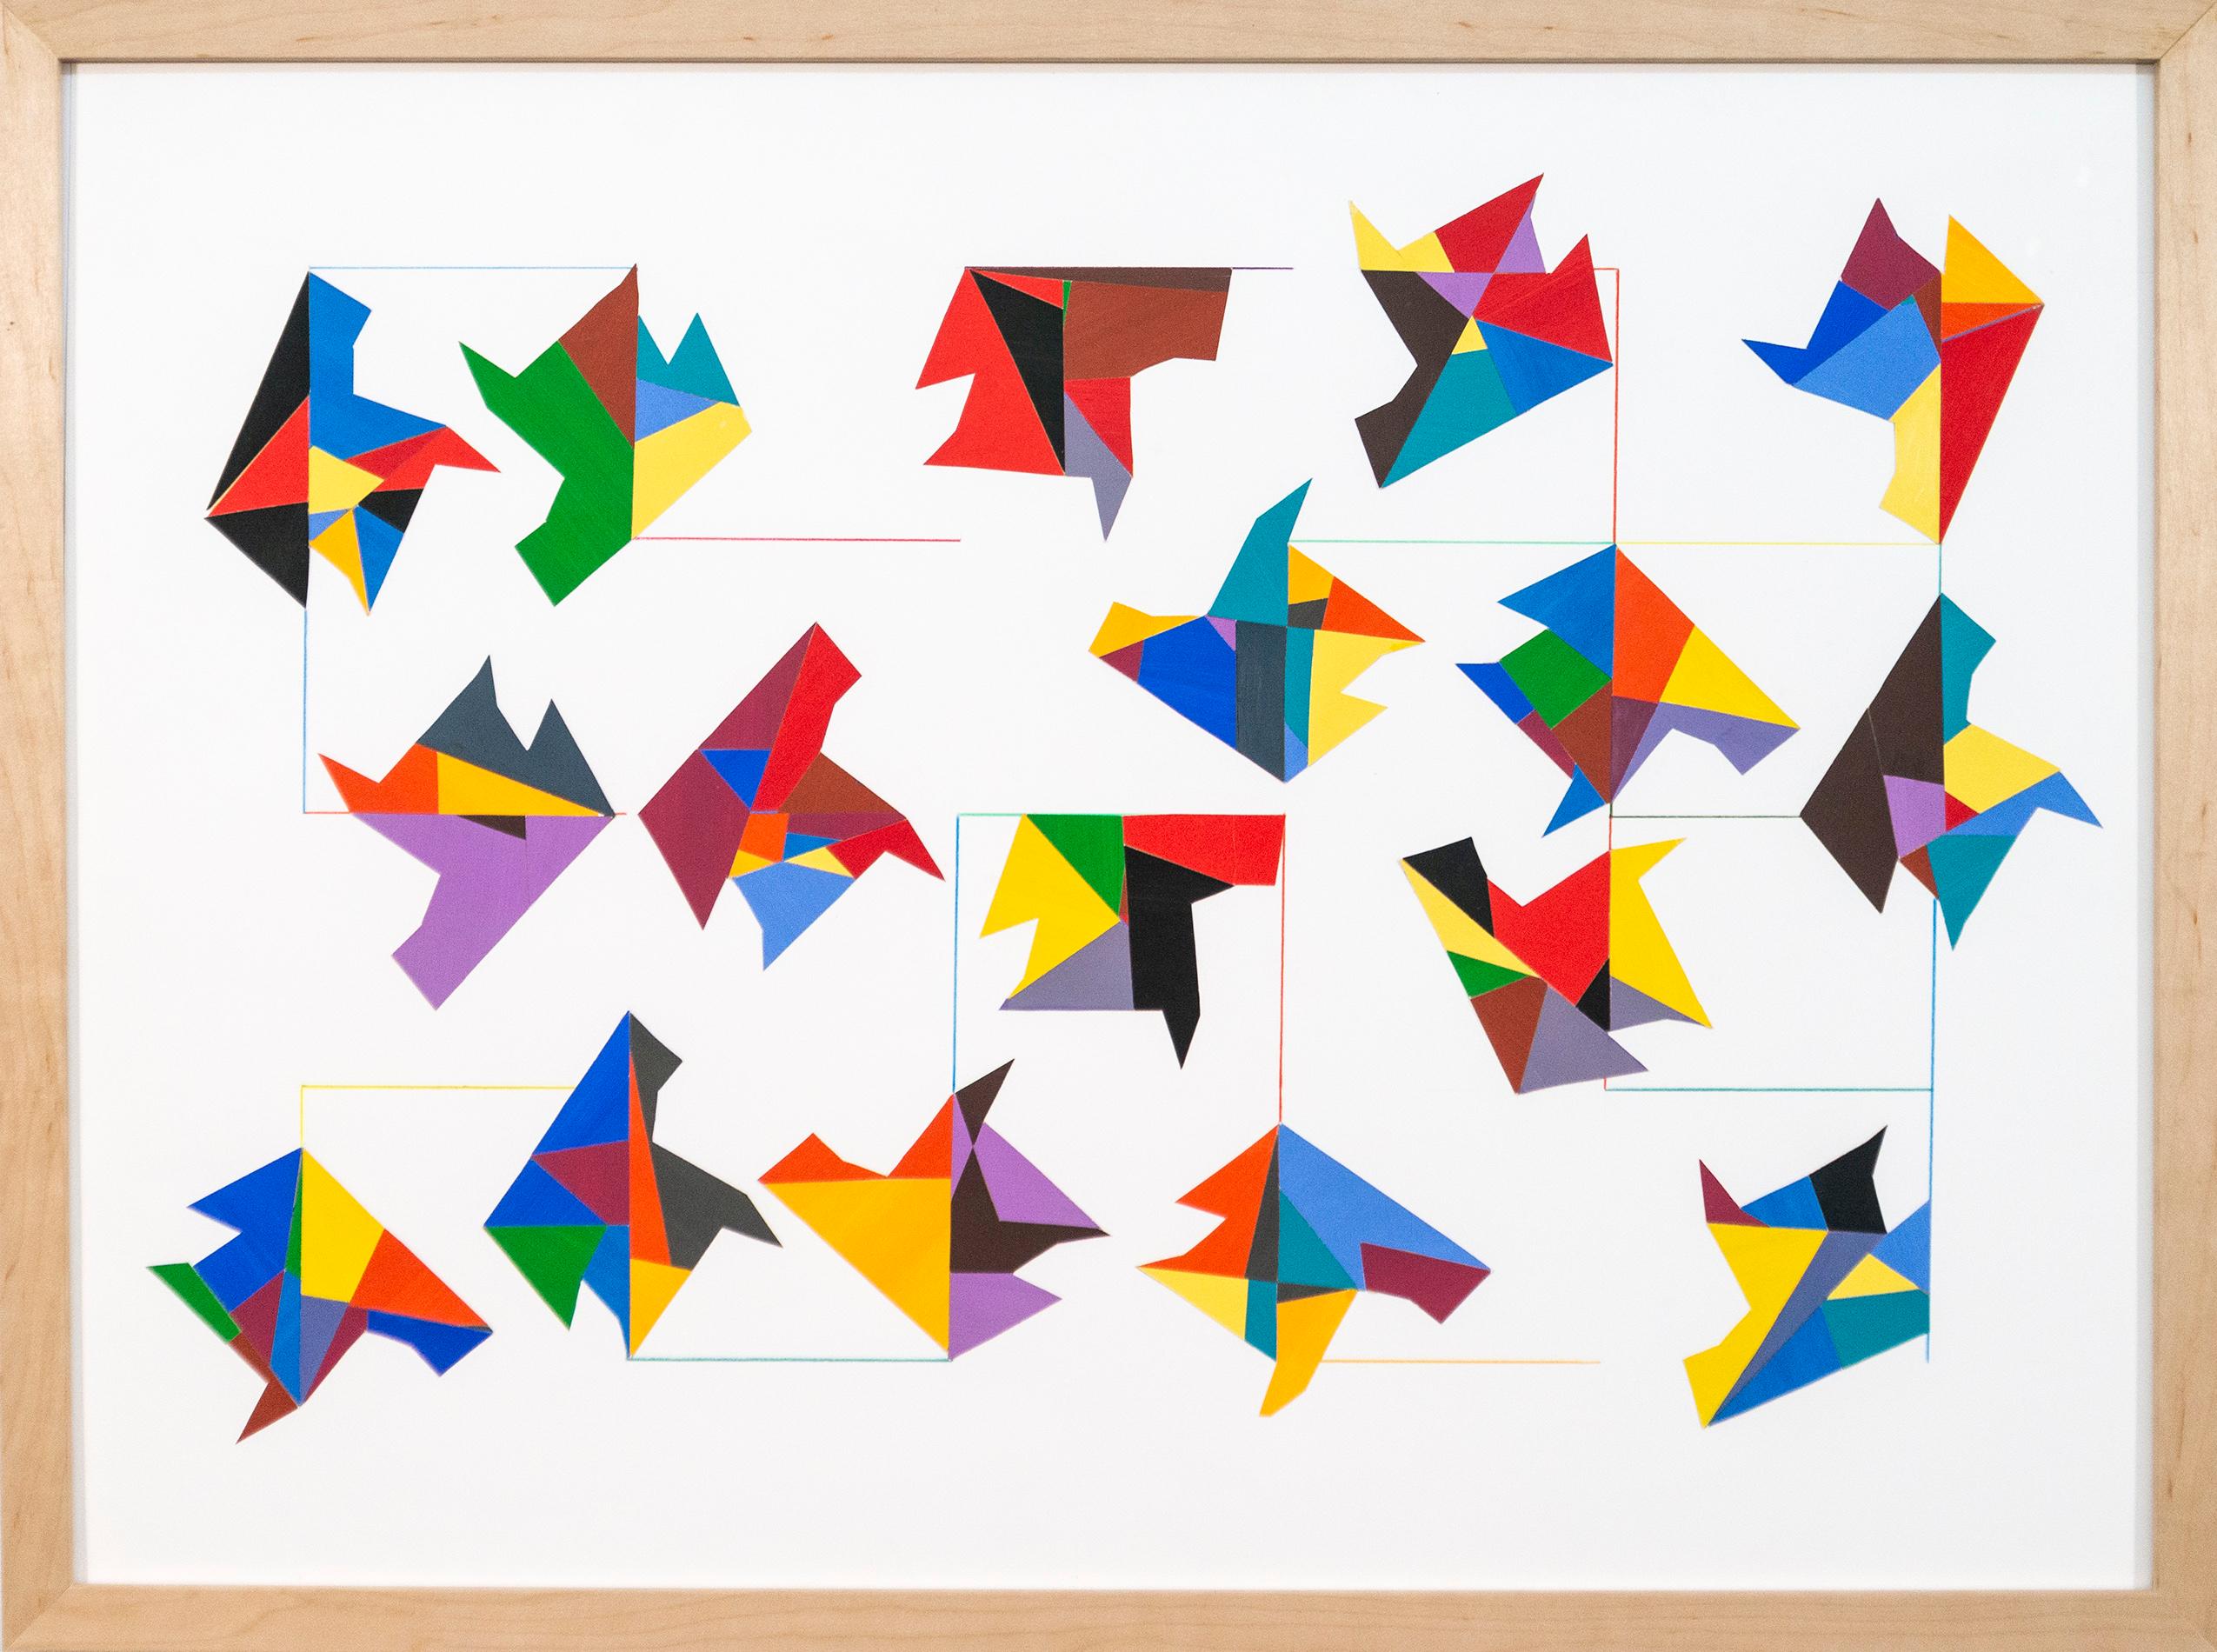 Abstract Painting Yvonne Lammerich - Interconnexions - collage de papier coloré, contemporain, abstrait géométrique